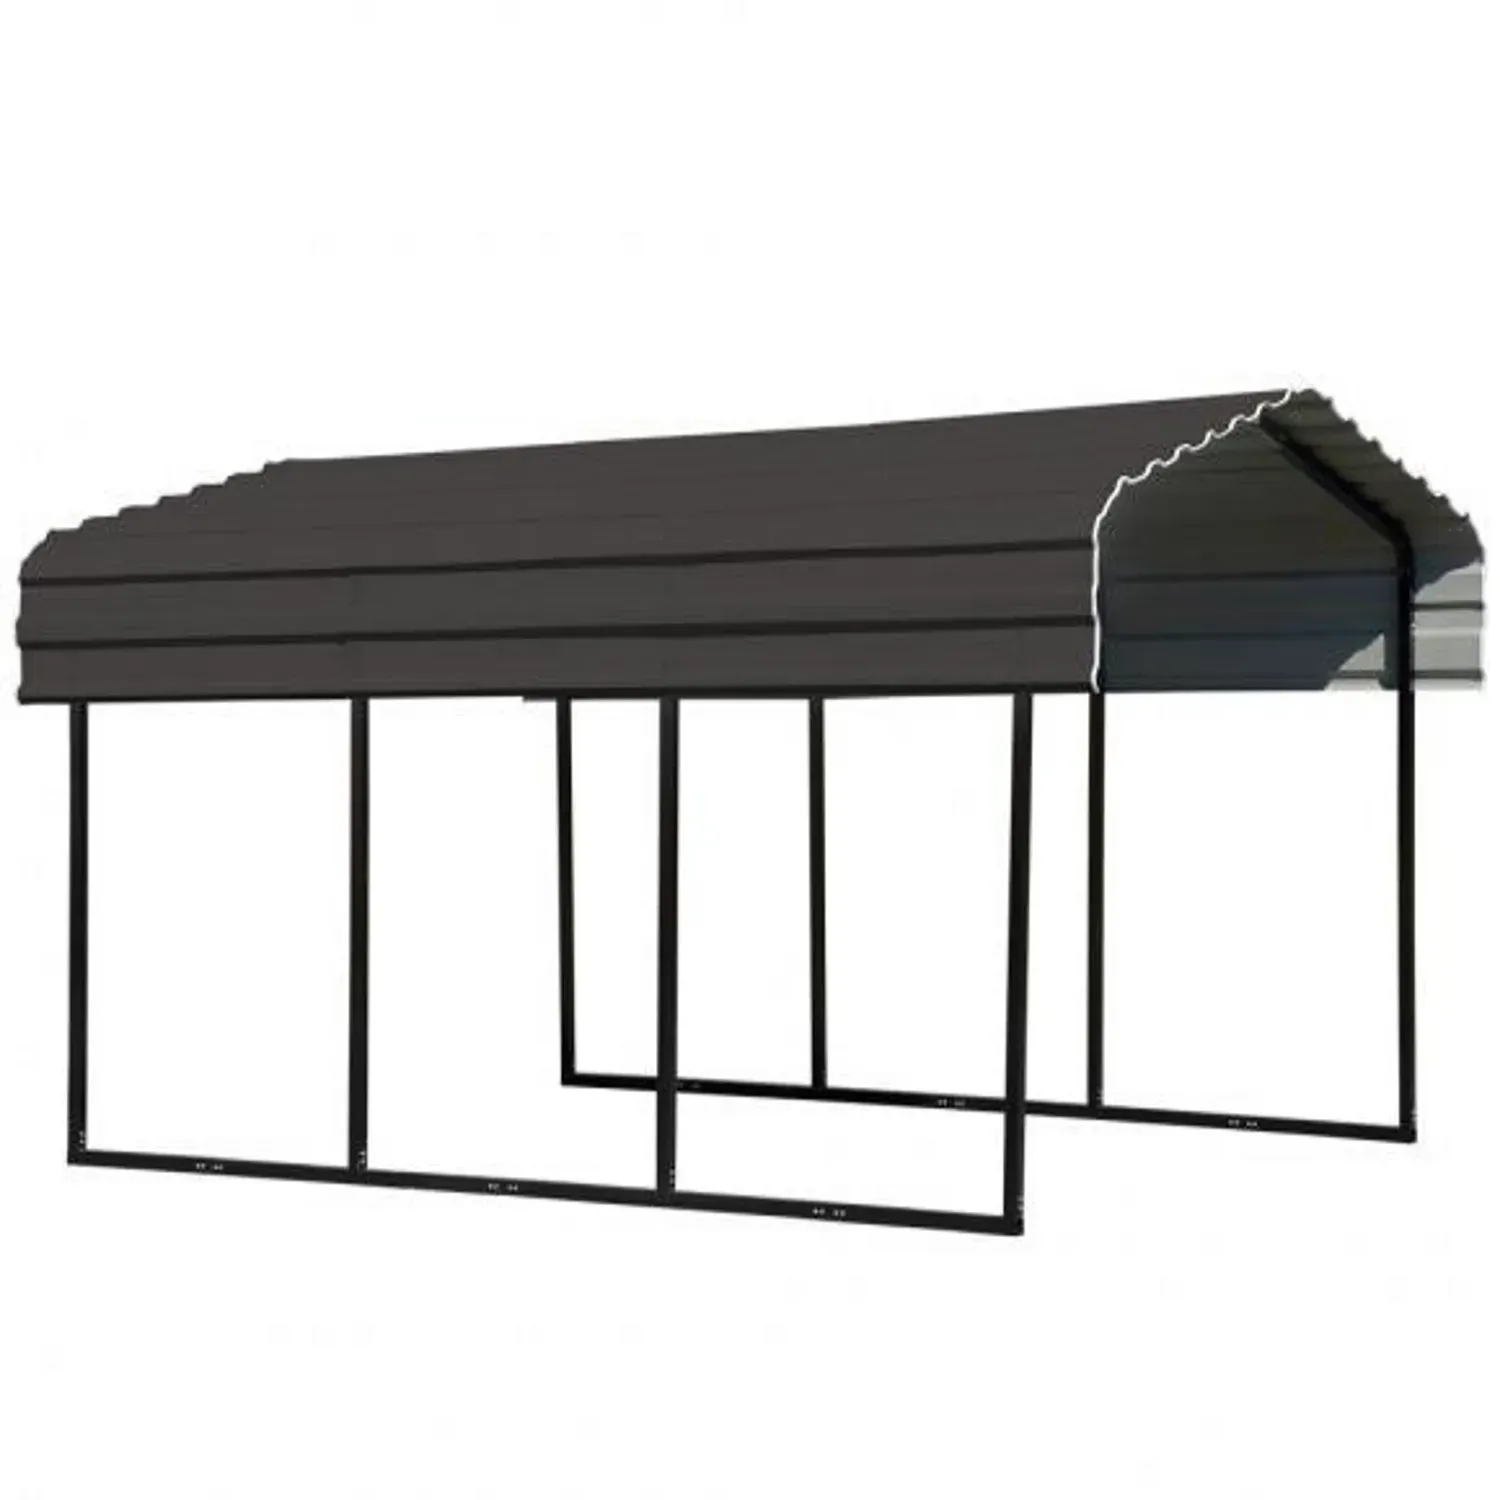 Shelter Logic Metall Carport "Venedig" mit Mansarddach aus verzinktem Stahl, 465 x 305 x 250 cm,schwarz,13,8 m2